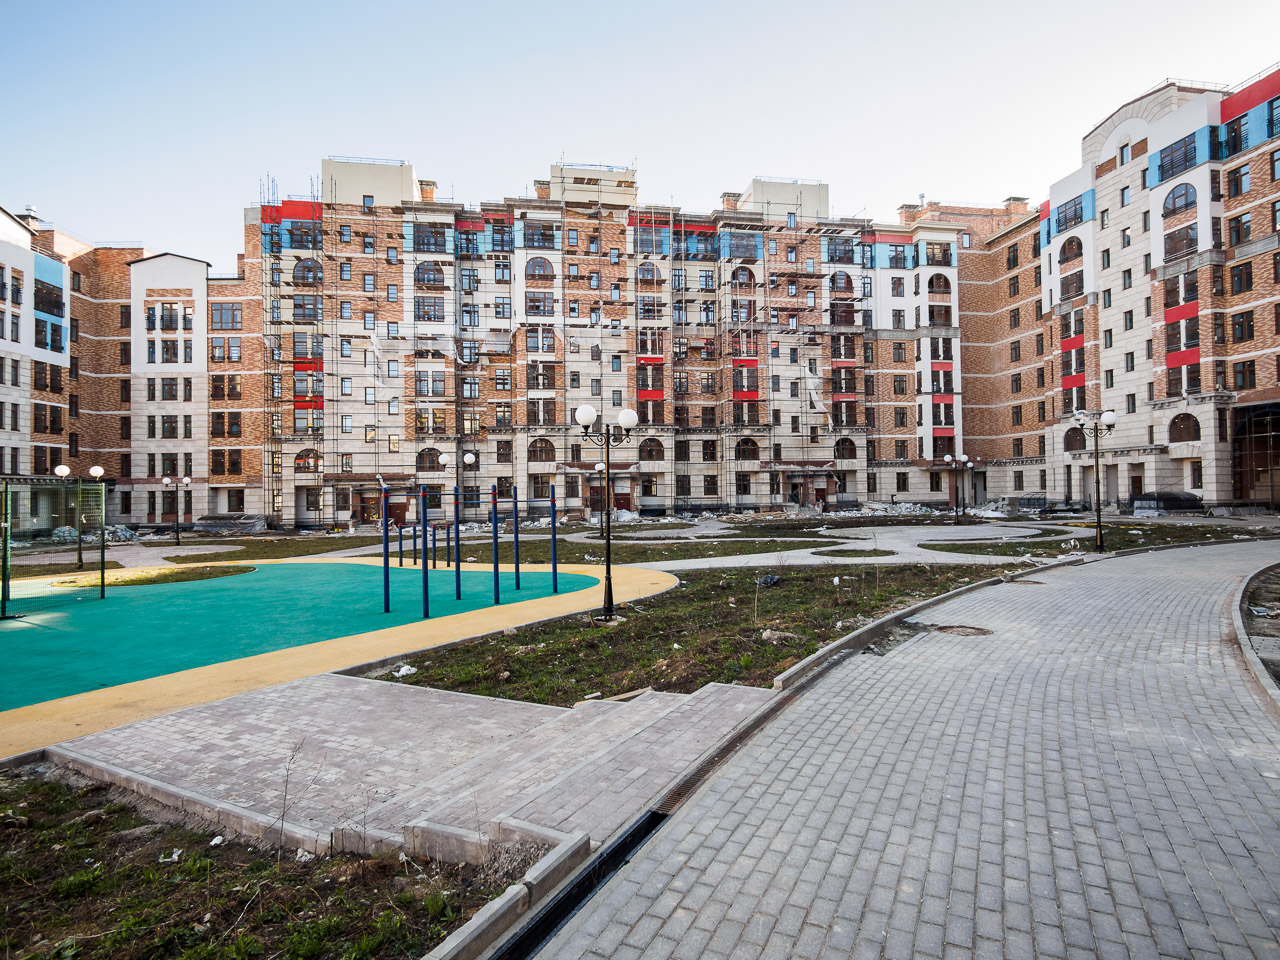 Докапитализация Фонда дольщиков и Дом.рф позволит достроить жилье СУ-155 и Urban Group